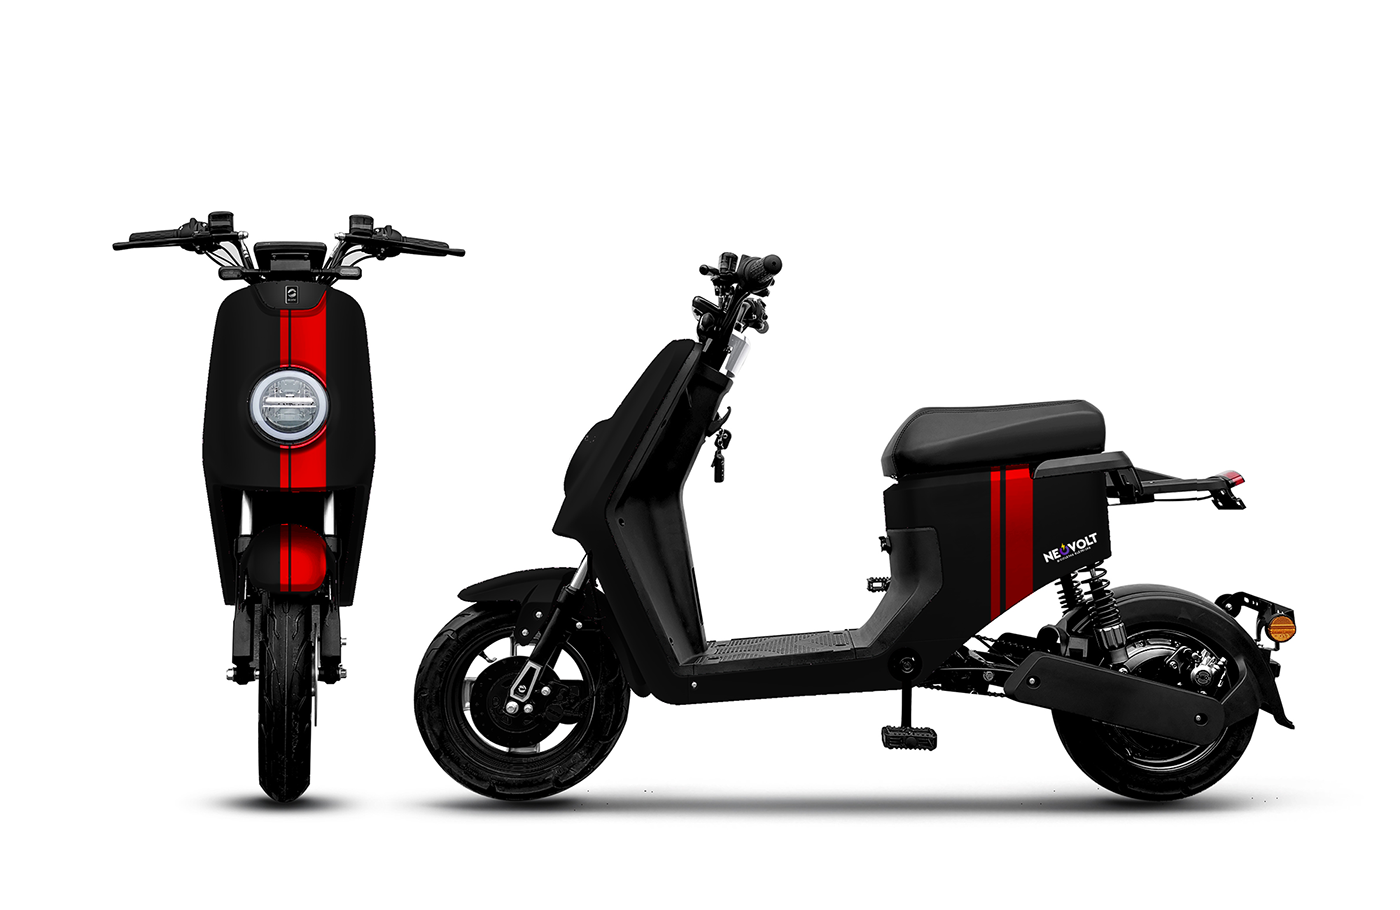 bicicletas eletricas branding  e-bikes e-motorcycles e-scooter eco naming neovolt Scooter sustentabilidade